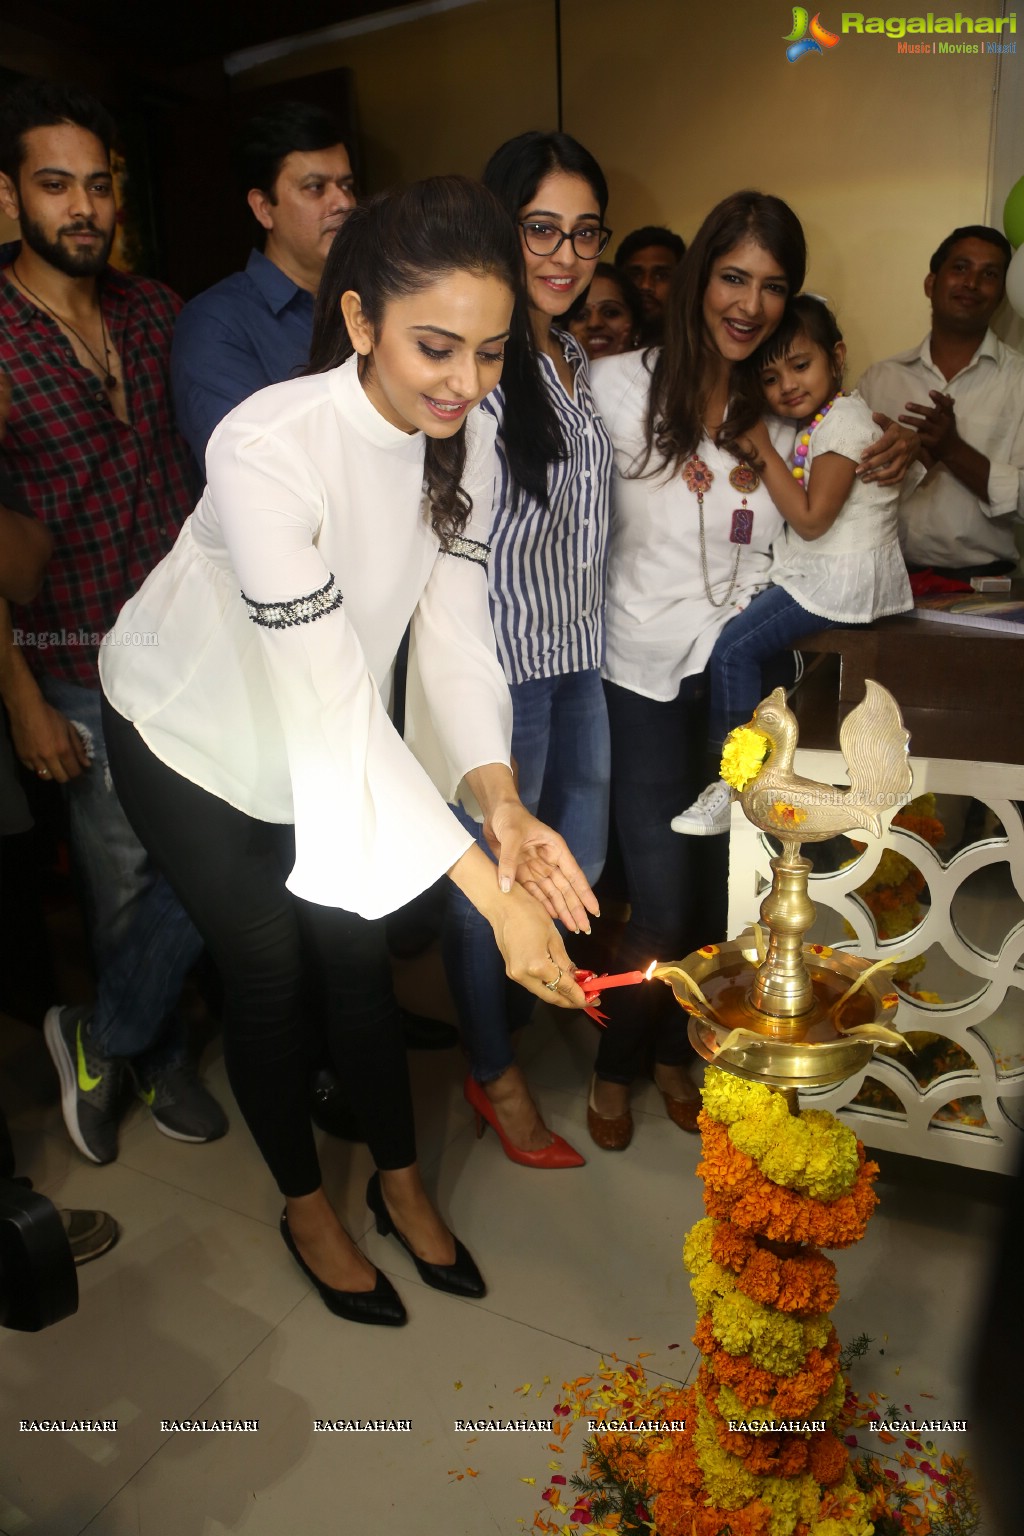 Lakshmi Manchu's Junior Kuppanna Launch, Hyderabad